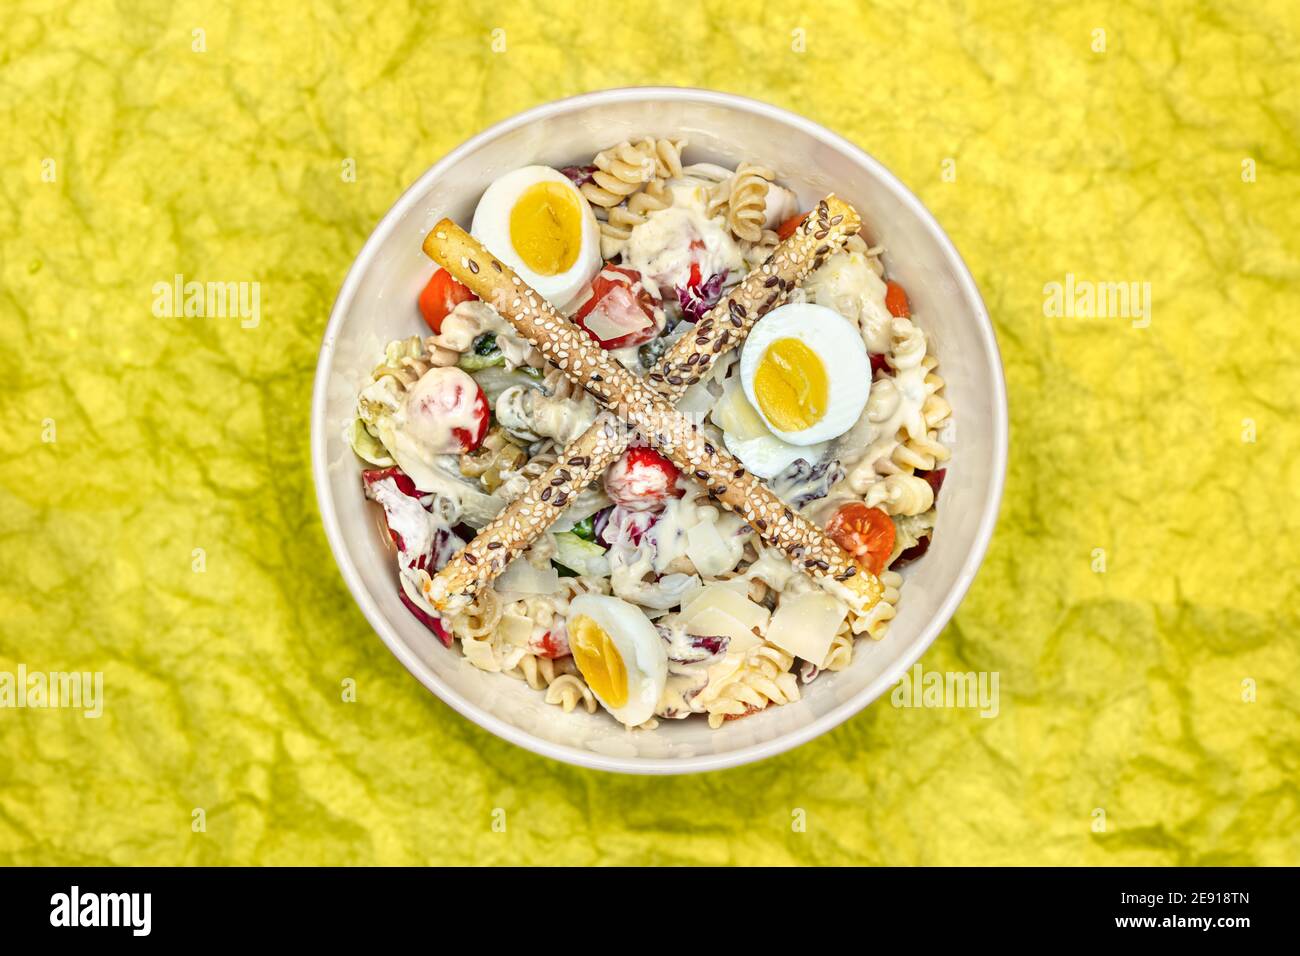 Vue panoramique d'une salade avec pâtes, œufs, légumes et gressins Banque D'Images